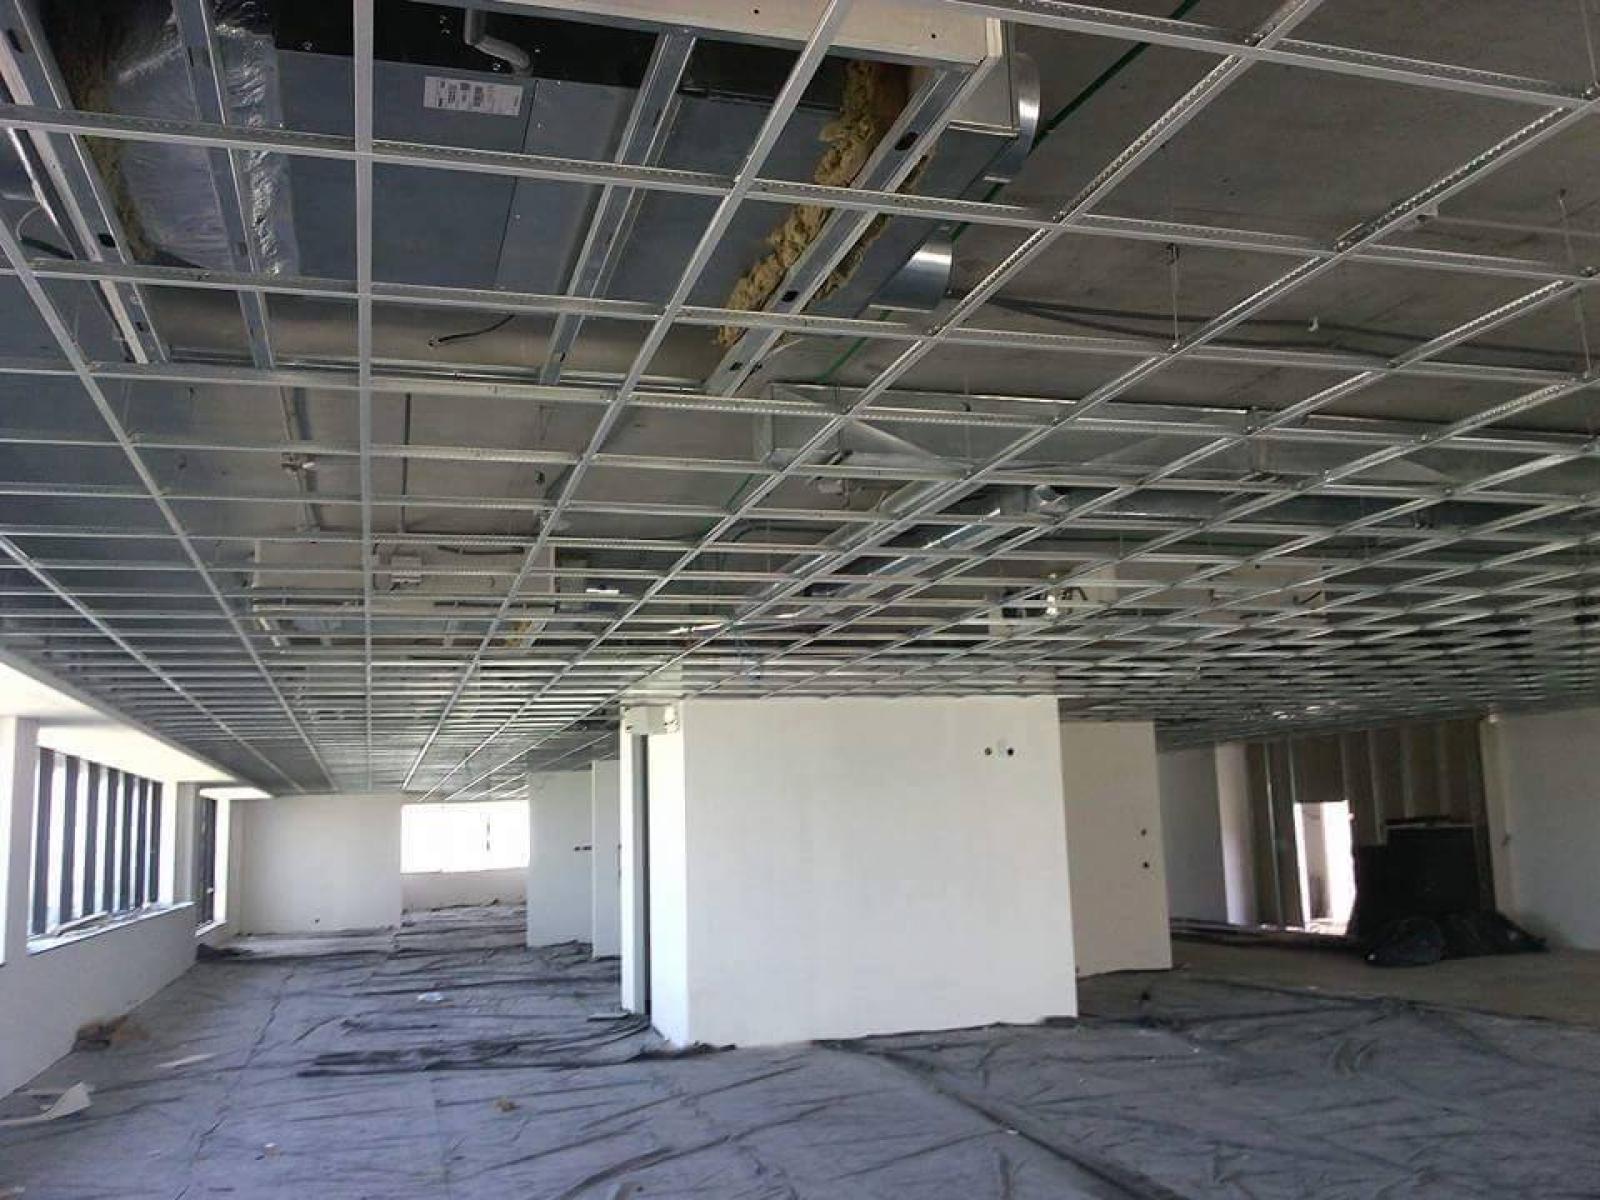 Structures pour plafonds modulaires,Faux plafond démontable